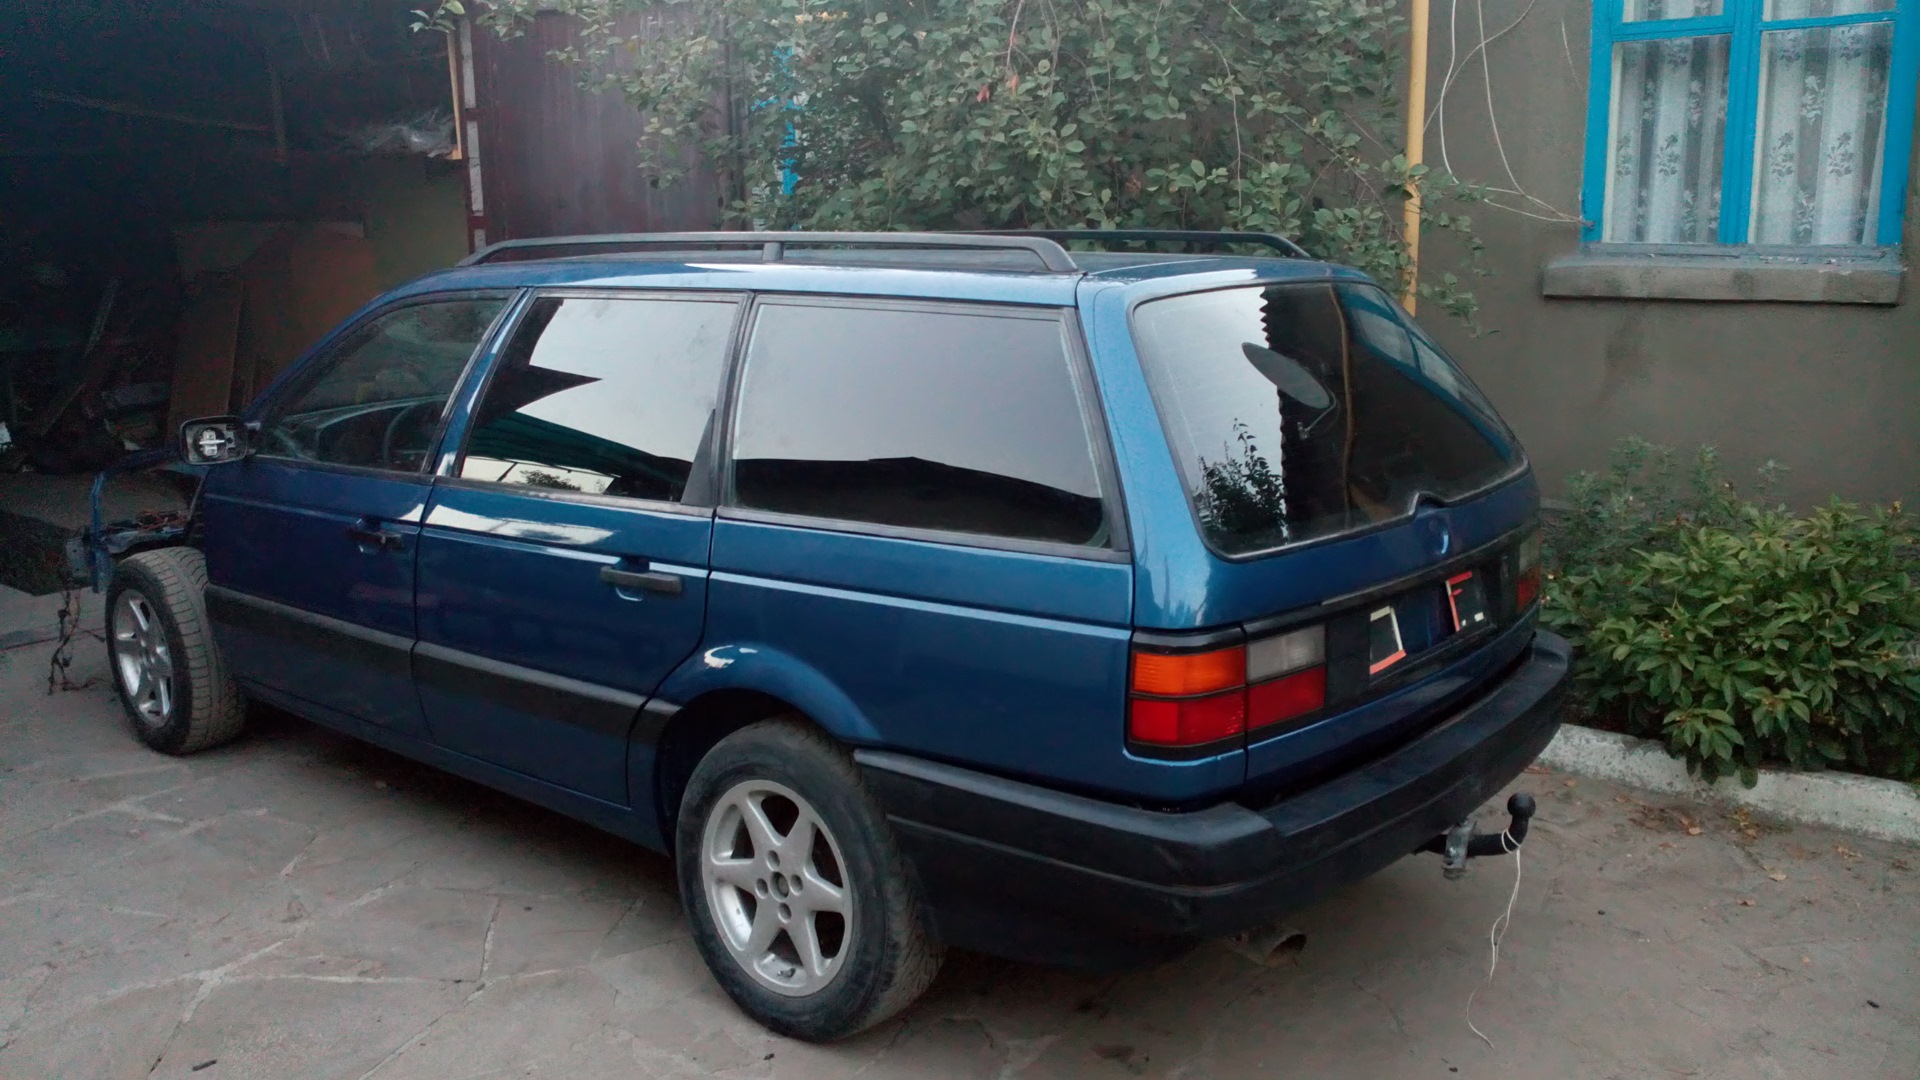 Купить фольксваген пассат б 4. Volkswagen Passat b3 универсал 1993. Volkswagen Passat b3 1990 универсал. Фольксваген Пассат б3 универсал синий. Volkswagen Passat b3 универсал синий.